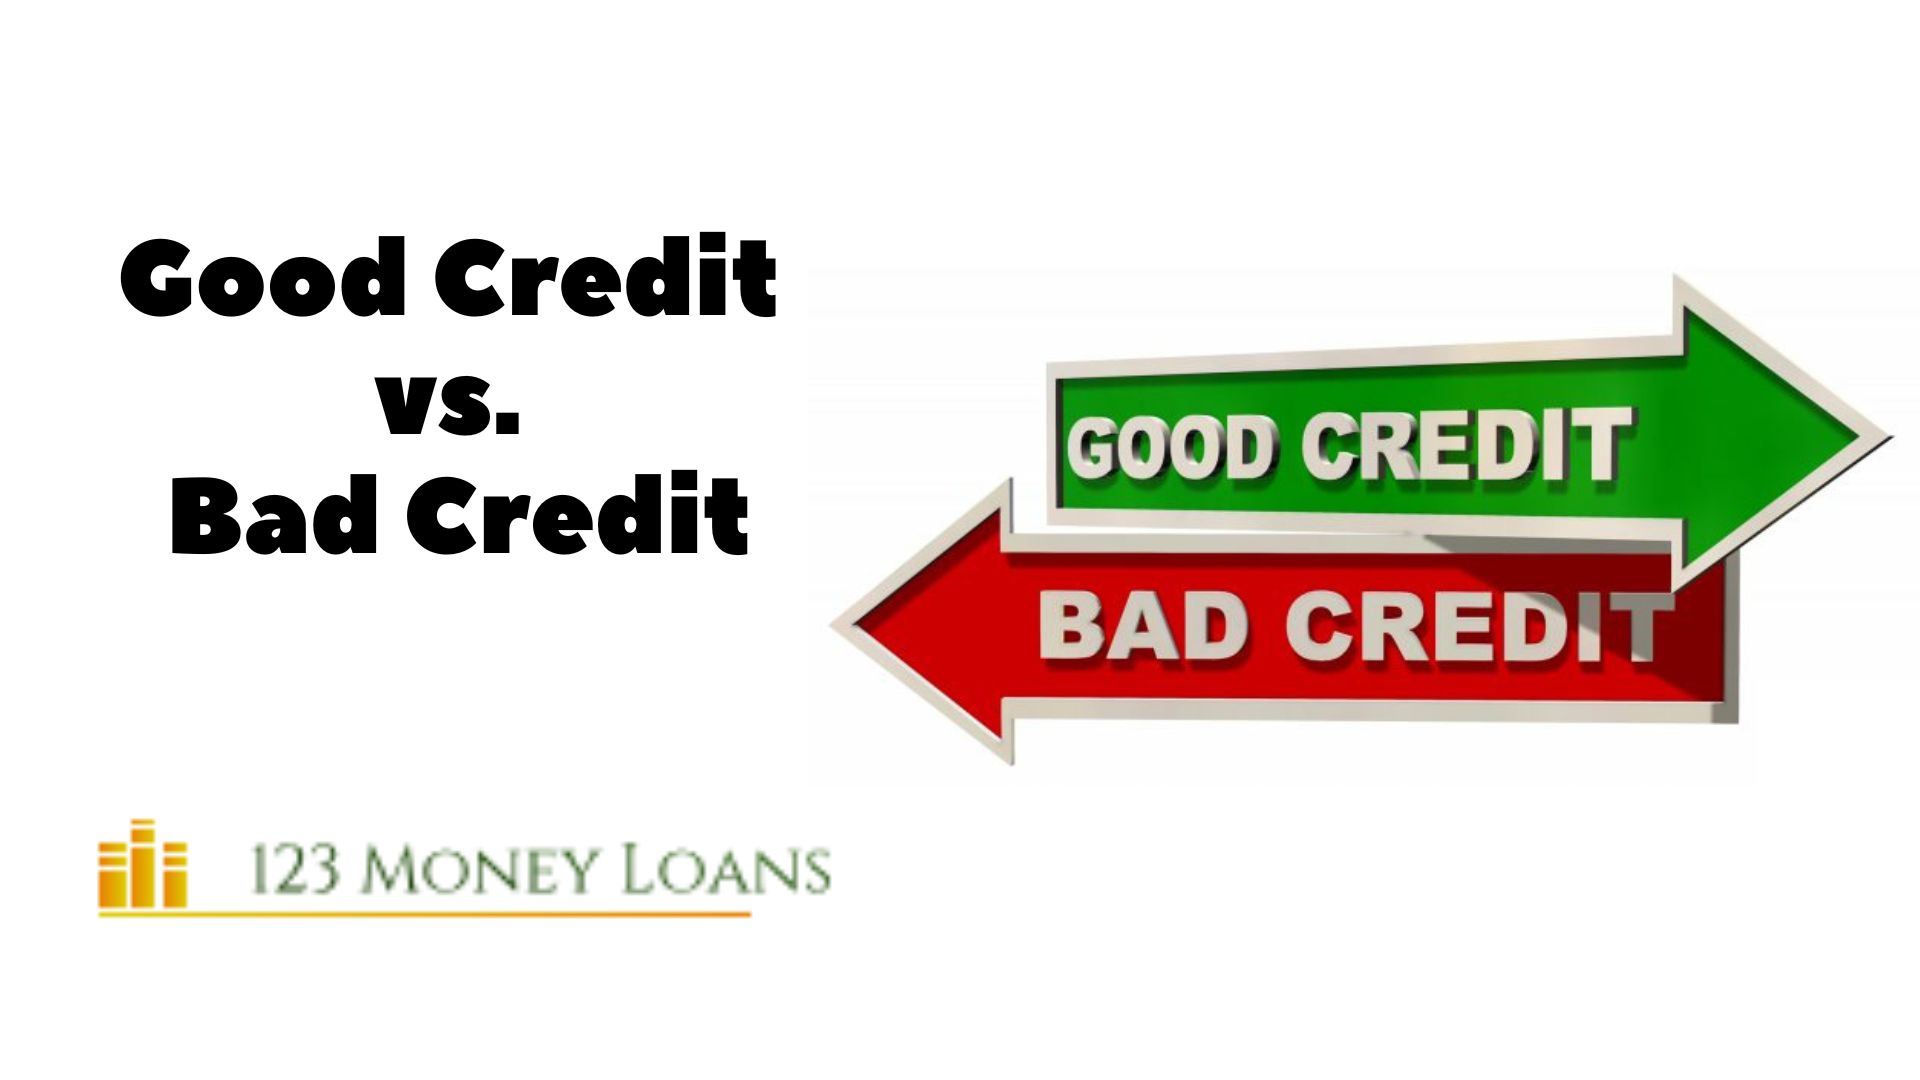 Good Credit vs. Bad Credit